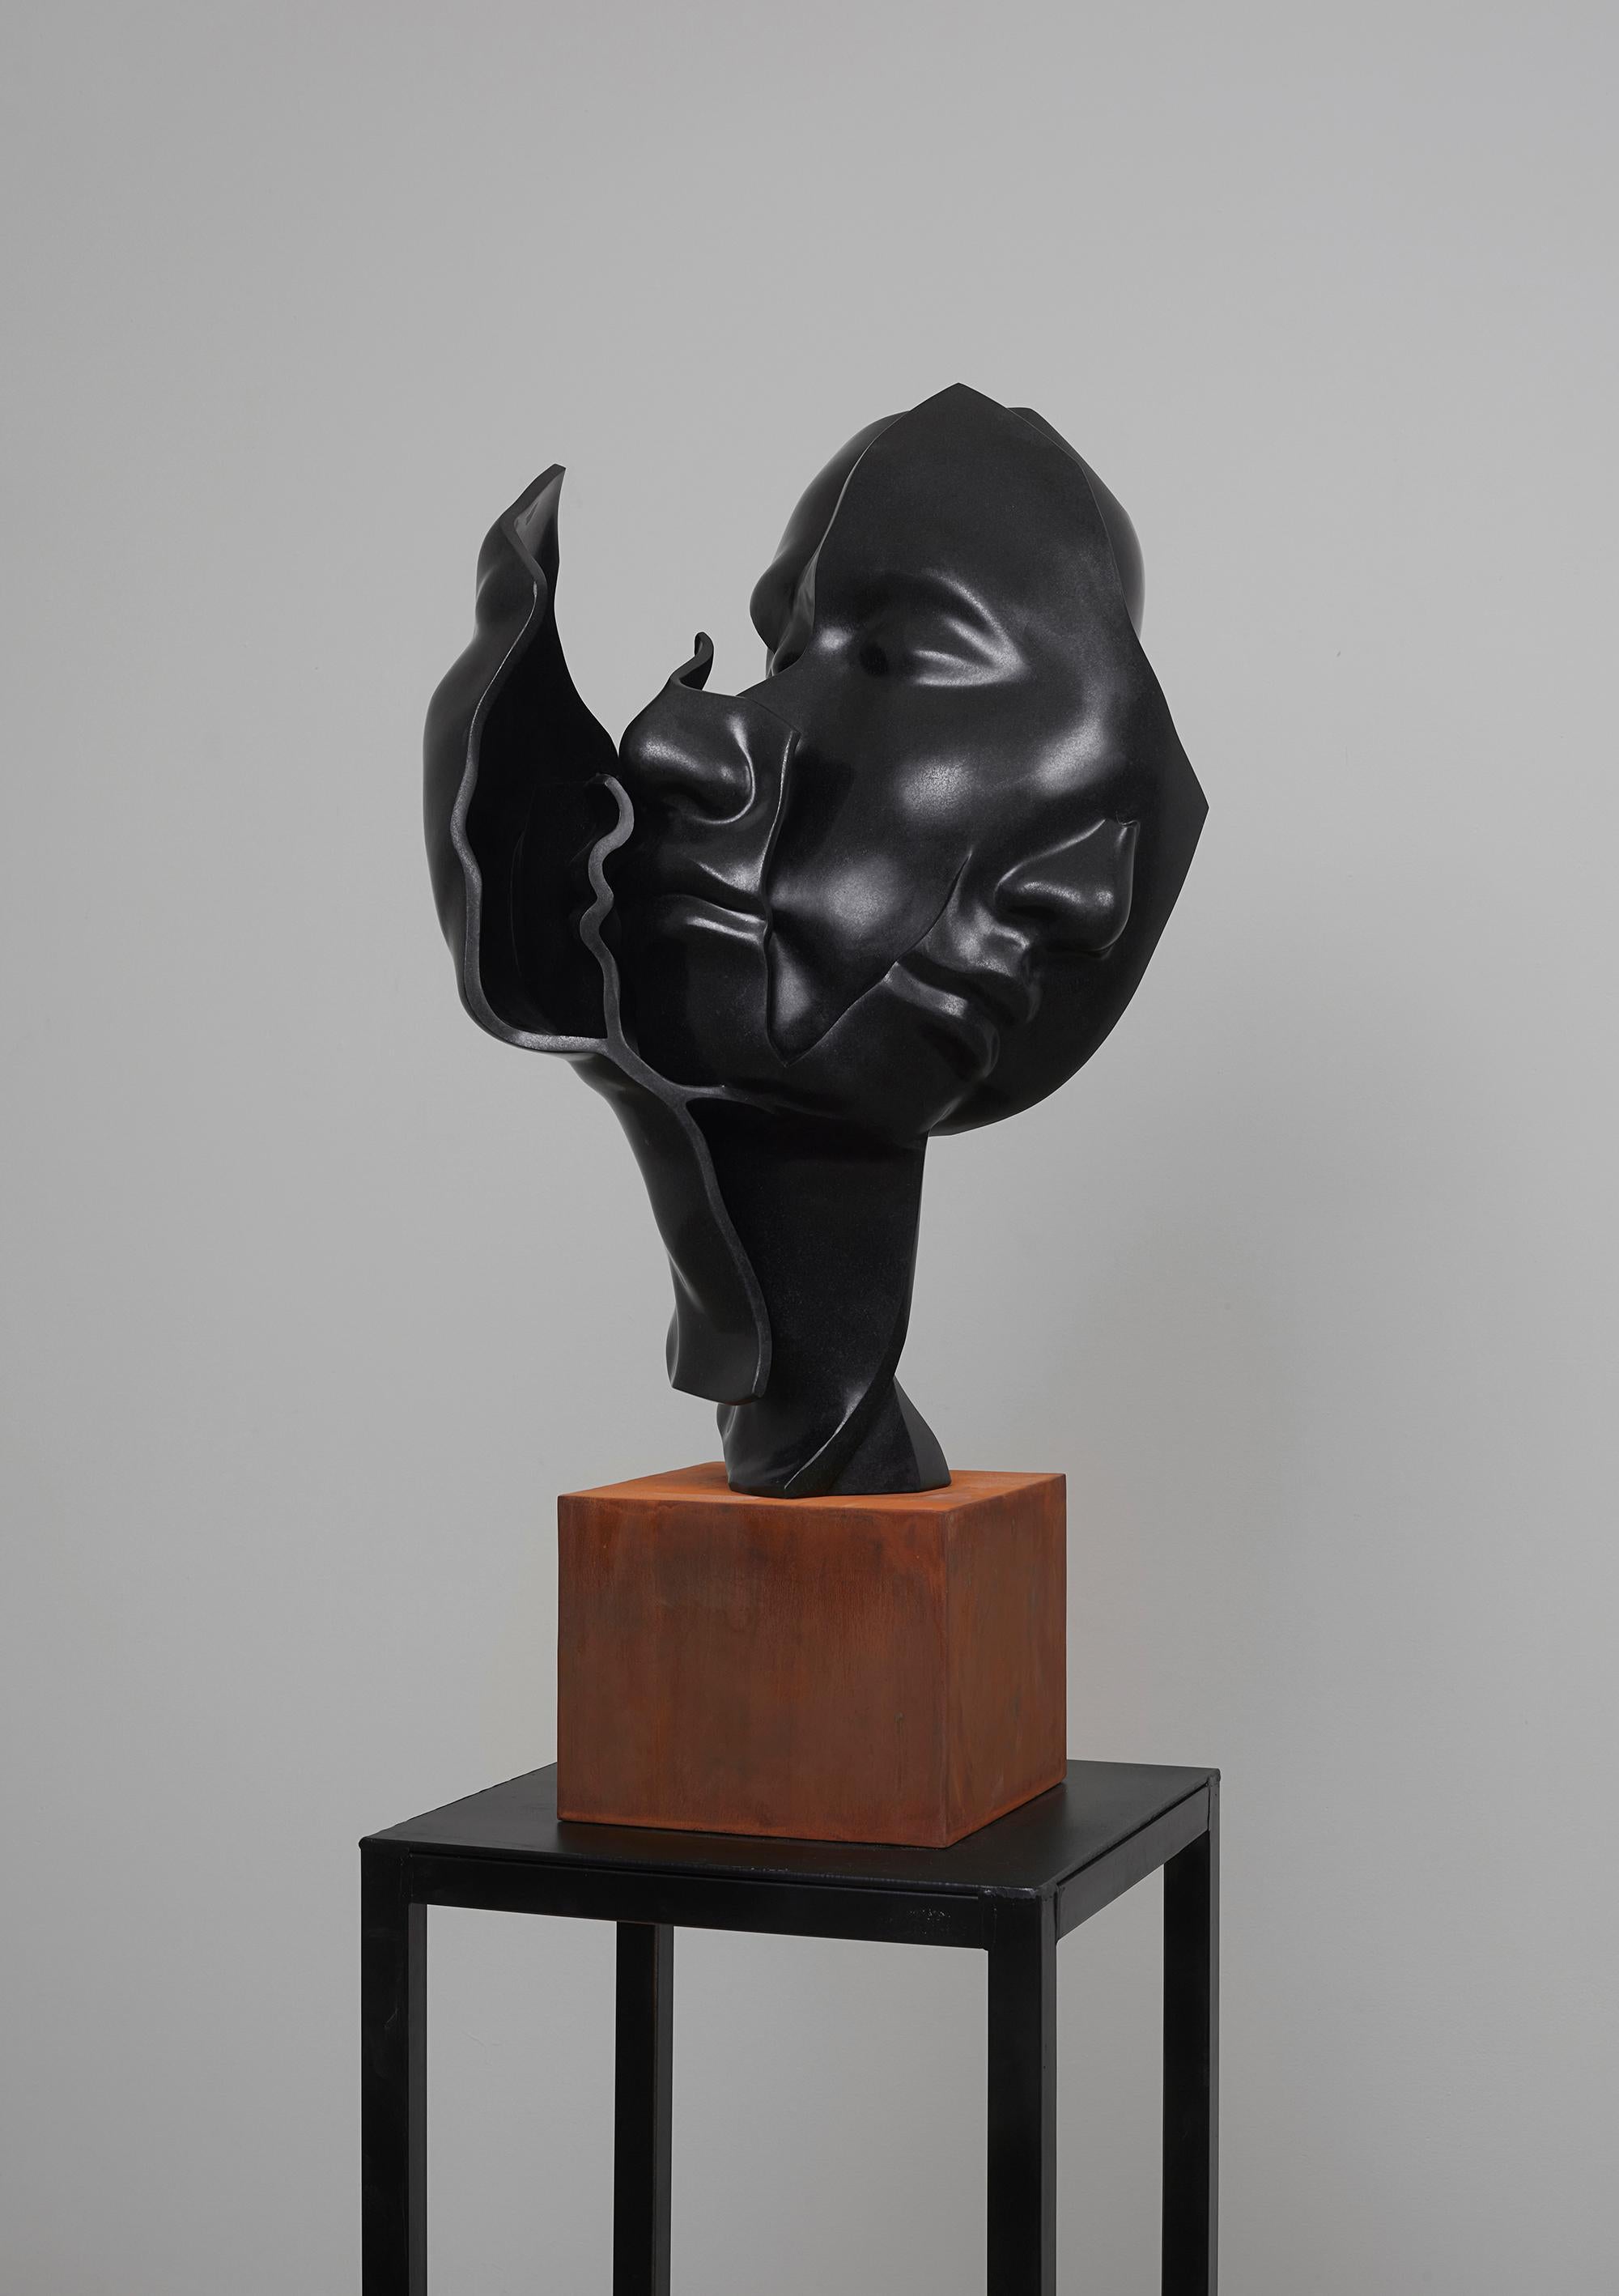 Hsu Yun Chin Abstract Sculpture - Black Granite and Iron "Faces No2", 2020